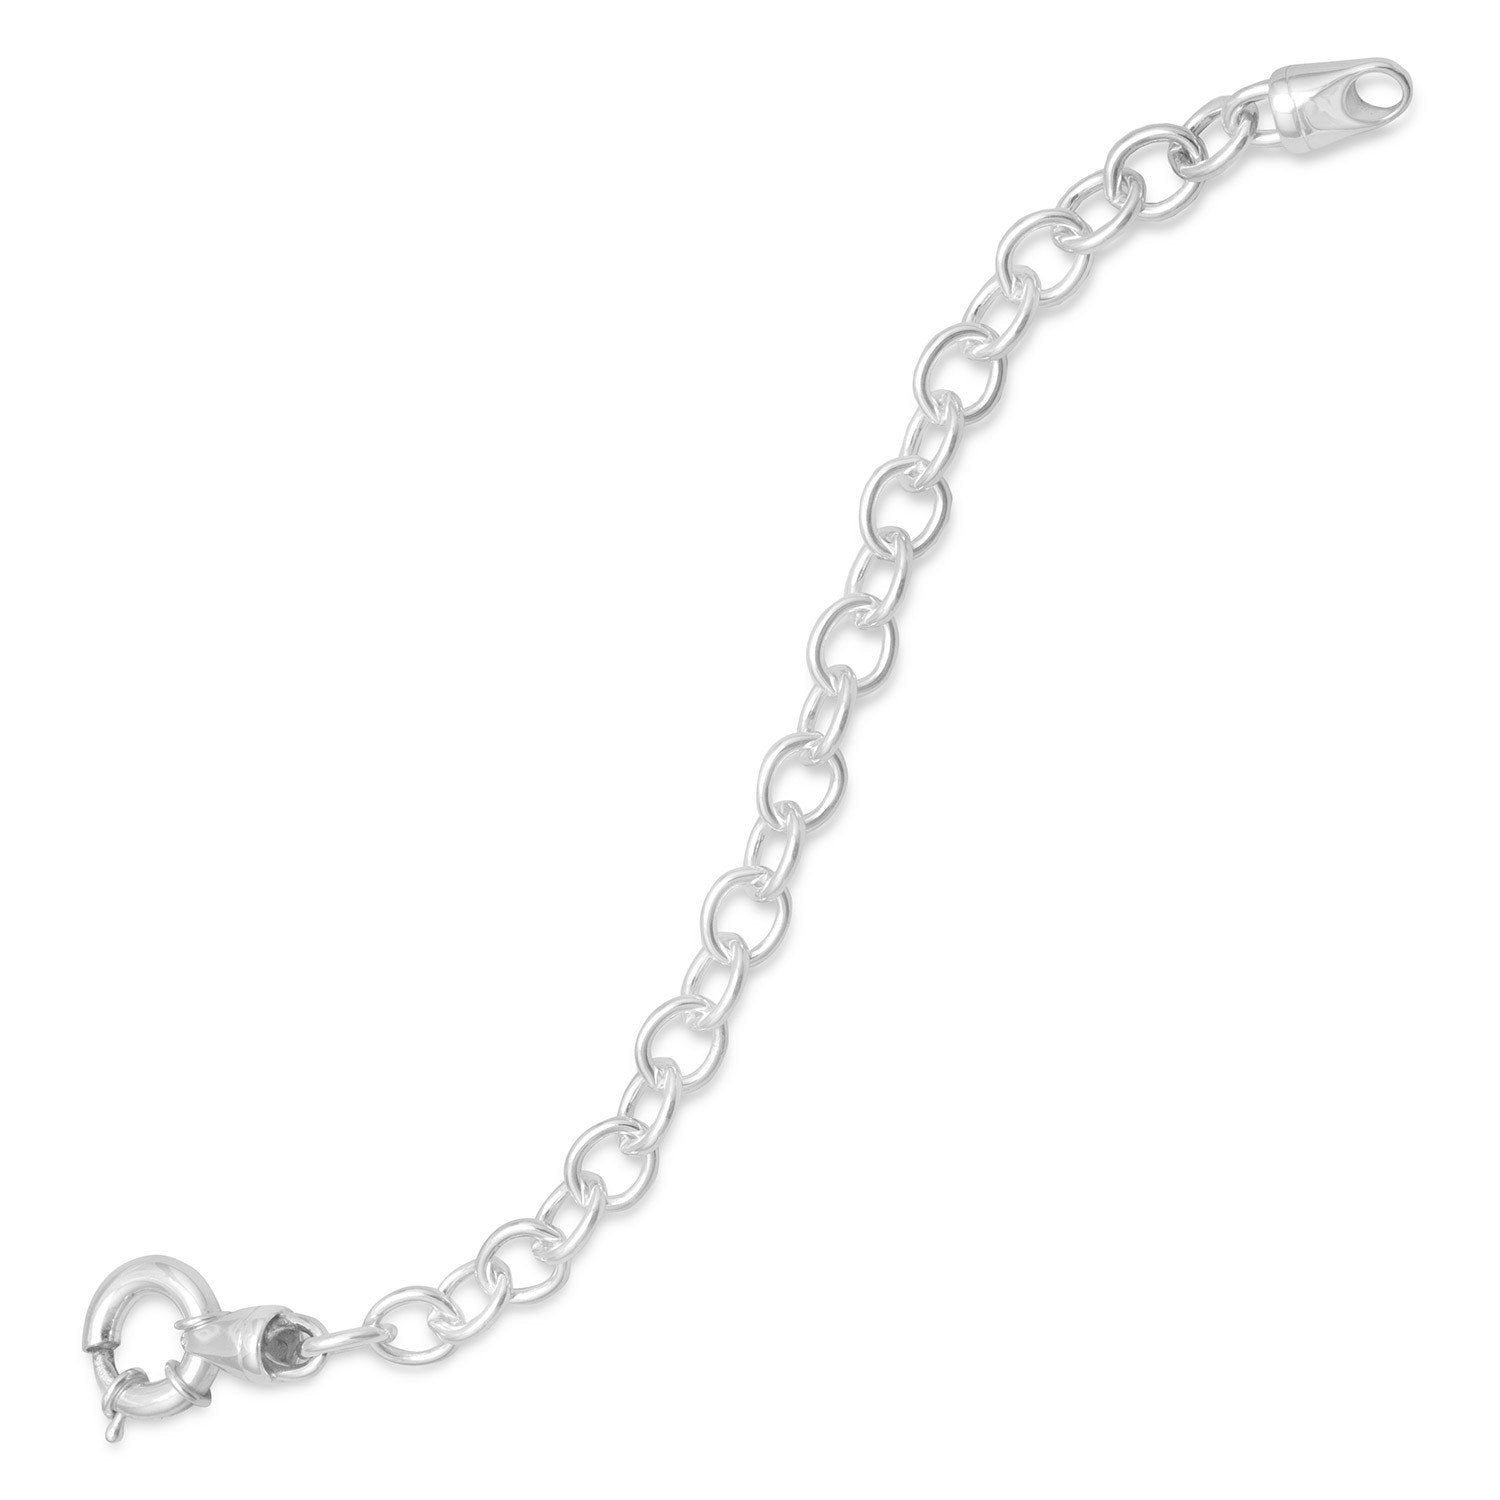 7.5" Round Link/Spring Ring Bracelet